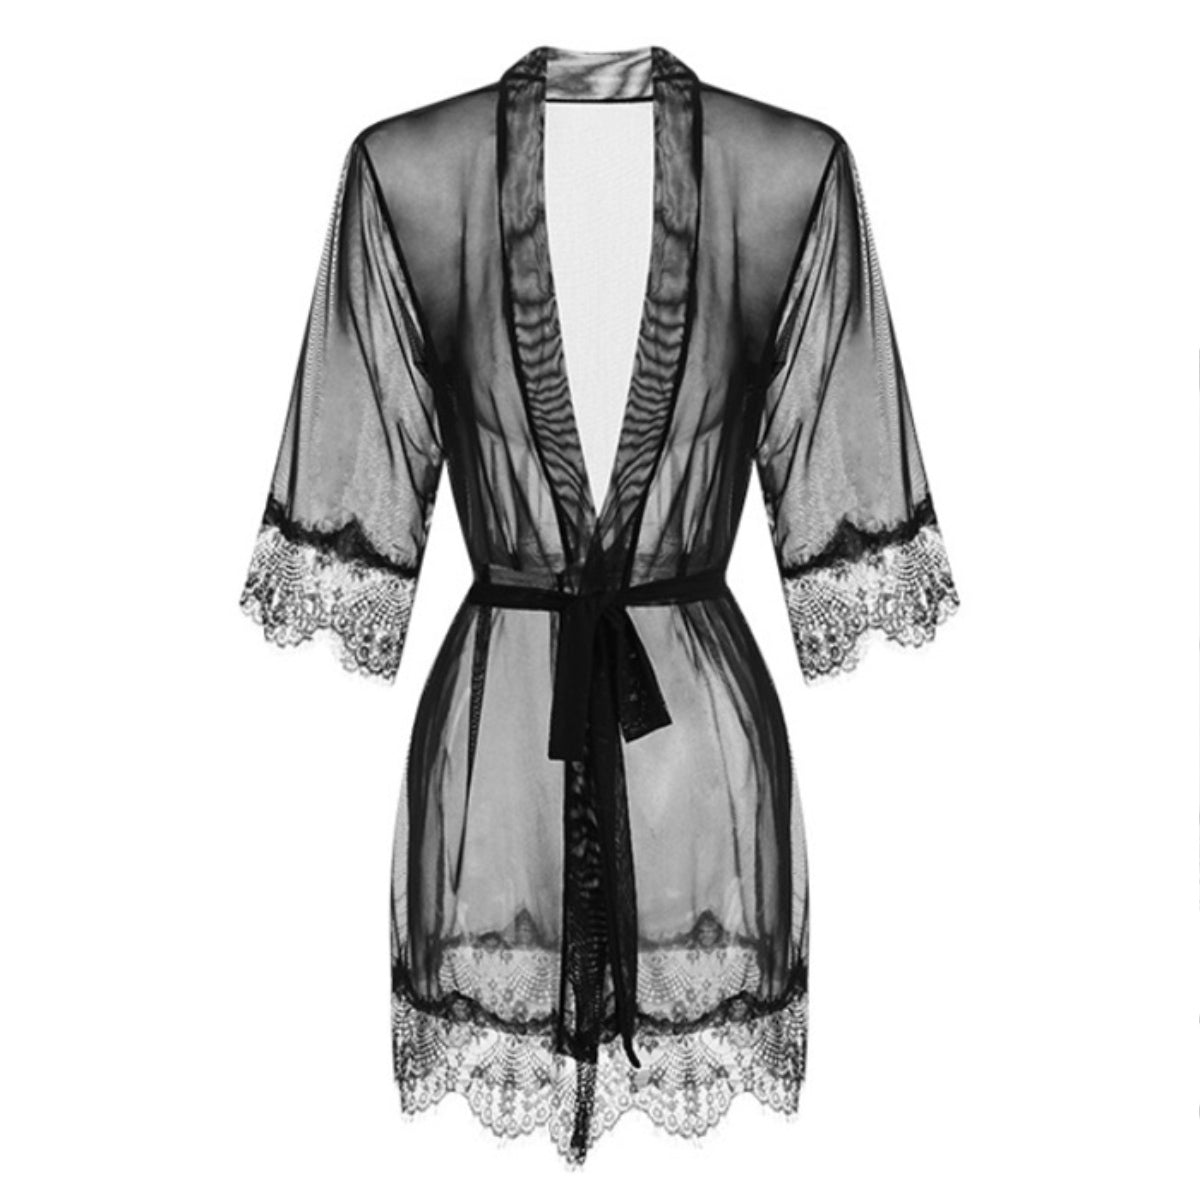 Casira mesh robe Intimates LOVEFREYA Free size Black 